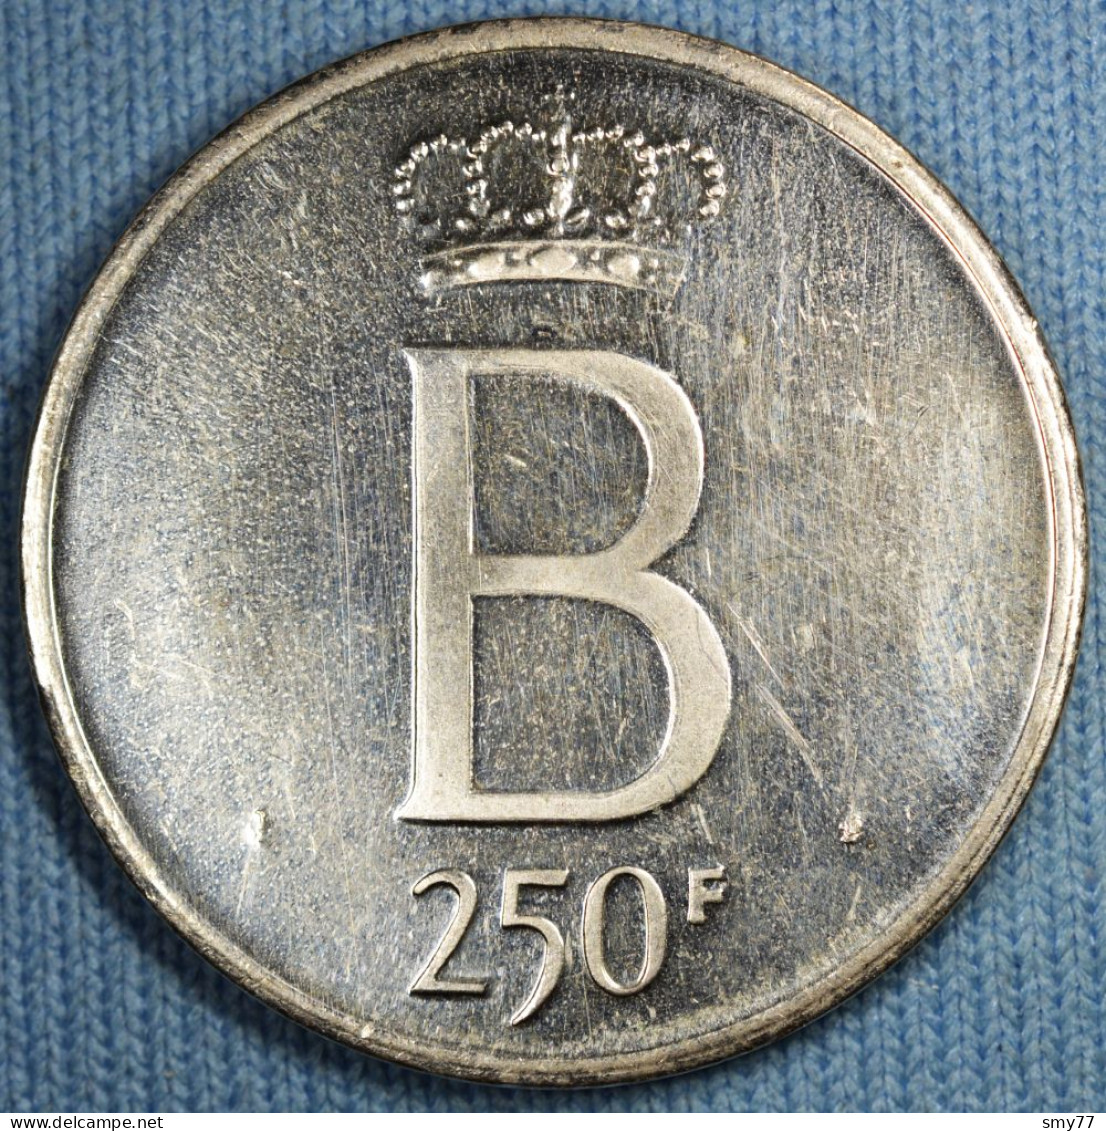 Belgique • 250 Francs 1976 Fl • Tranche étoilée - Petit B - 5 Droit - Flan Poli • [24-265] - 250 Francs